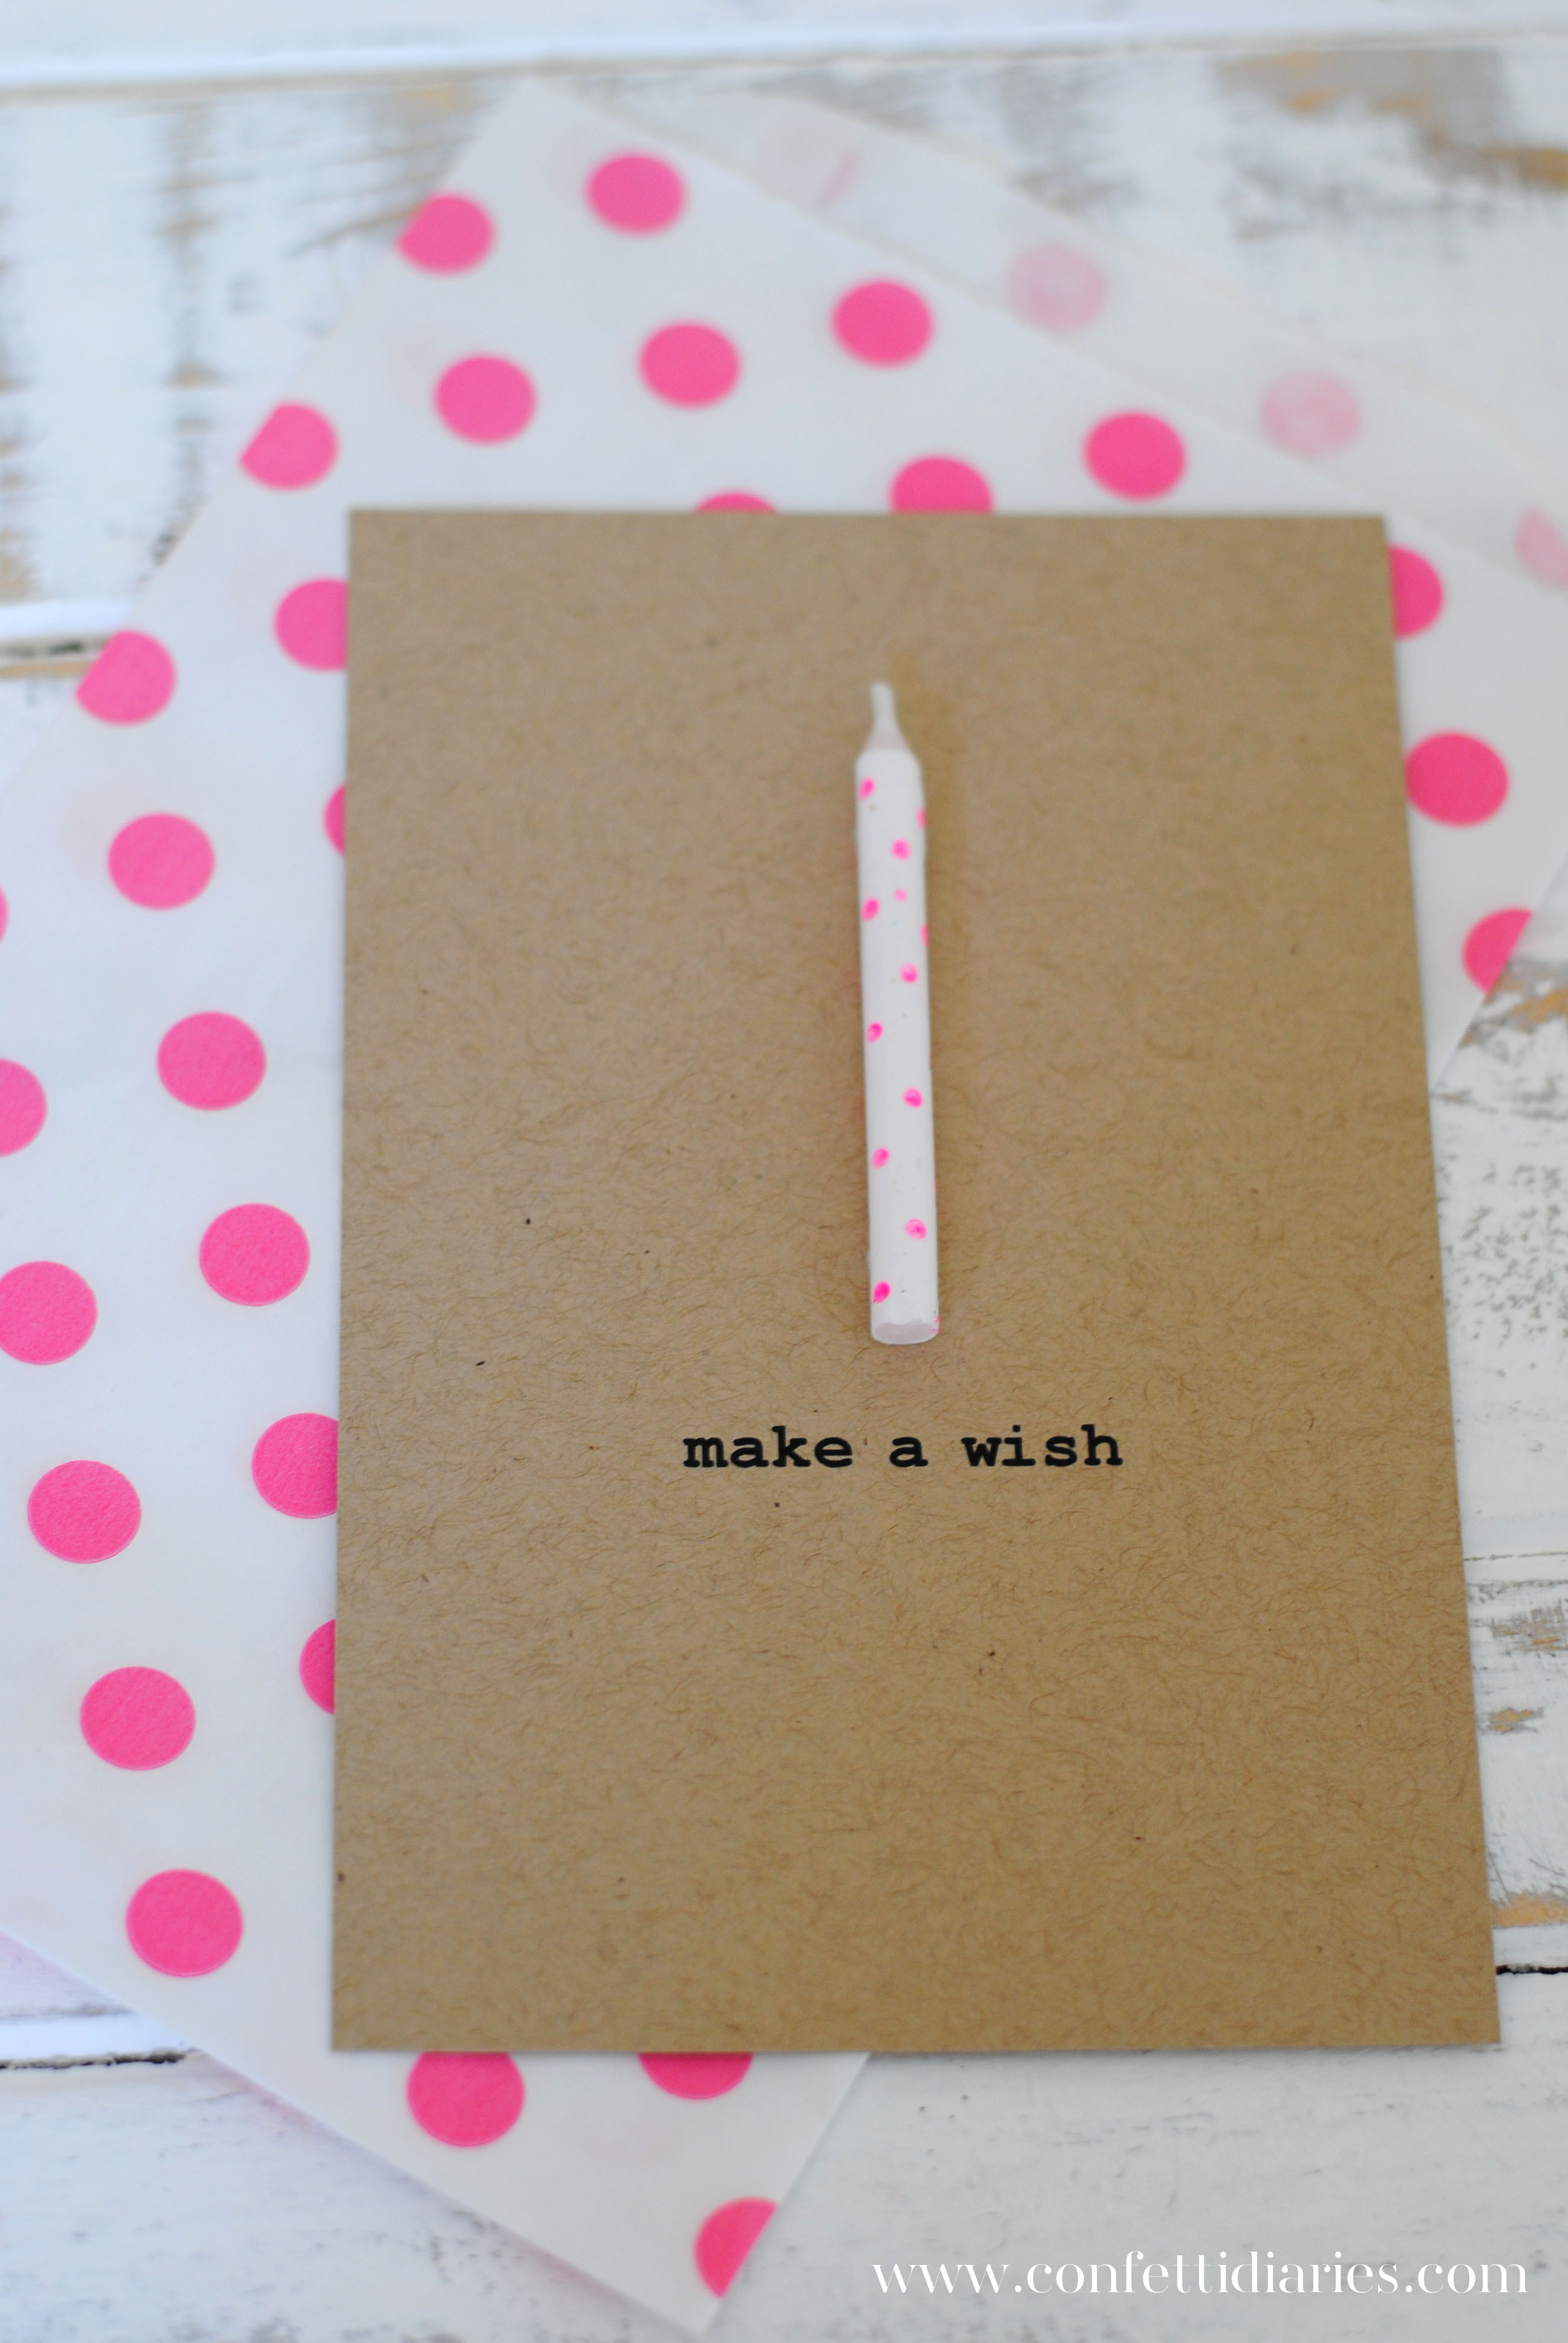 Cute Homemade Birthday Card Ideas Cute Diy Birthday Cards Best 20 Homemade Cards Ideas On Pinterest